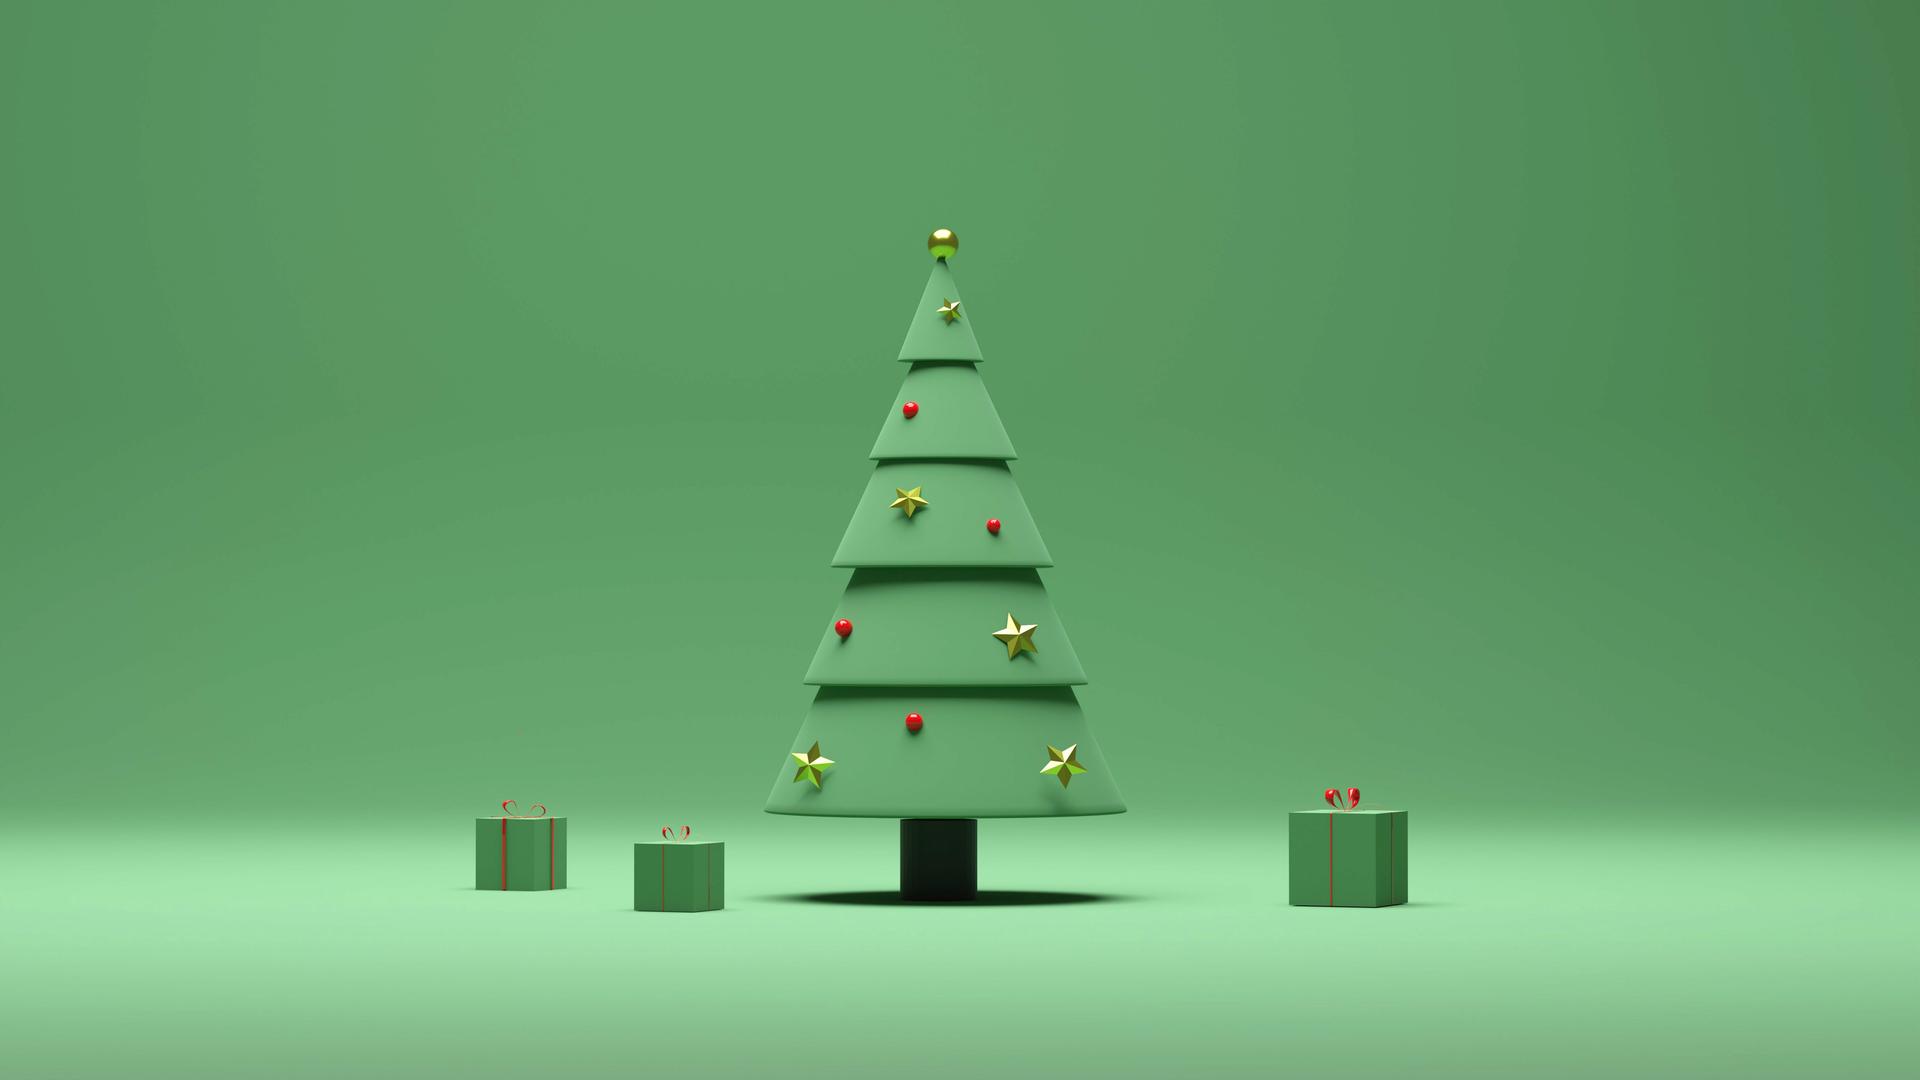 3D-Rendering eines Weihnachtsbaumes und grün verpackter Geschenke vor einem grünen Hintergrund in minimalistischem Stil.